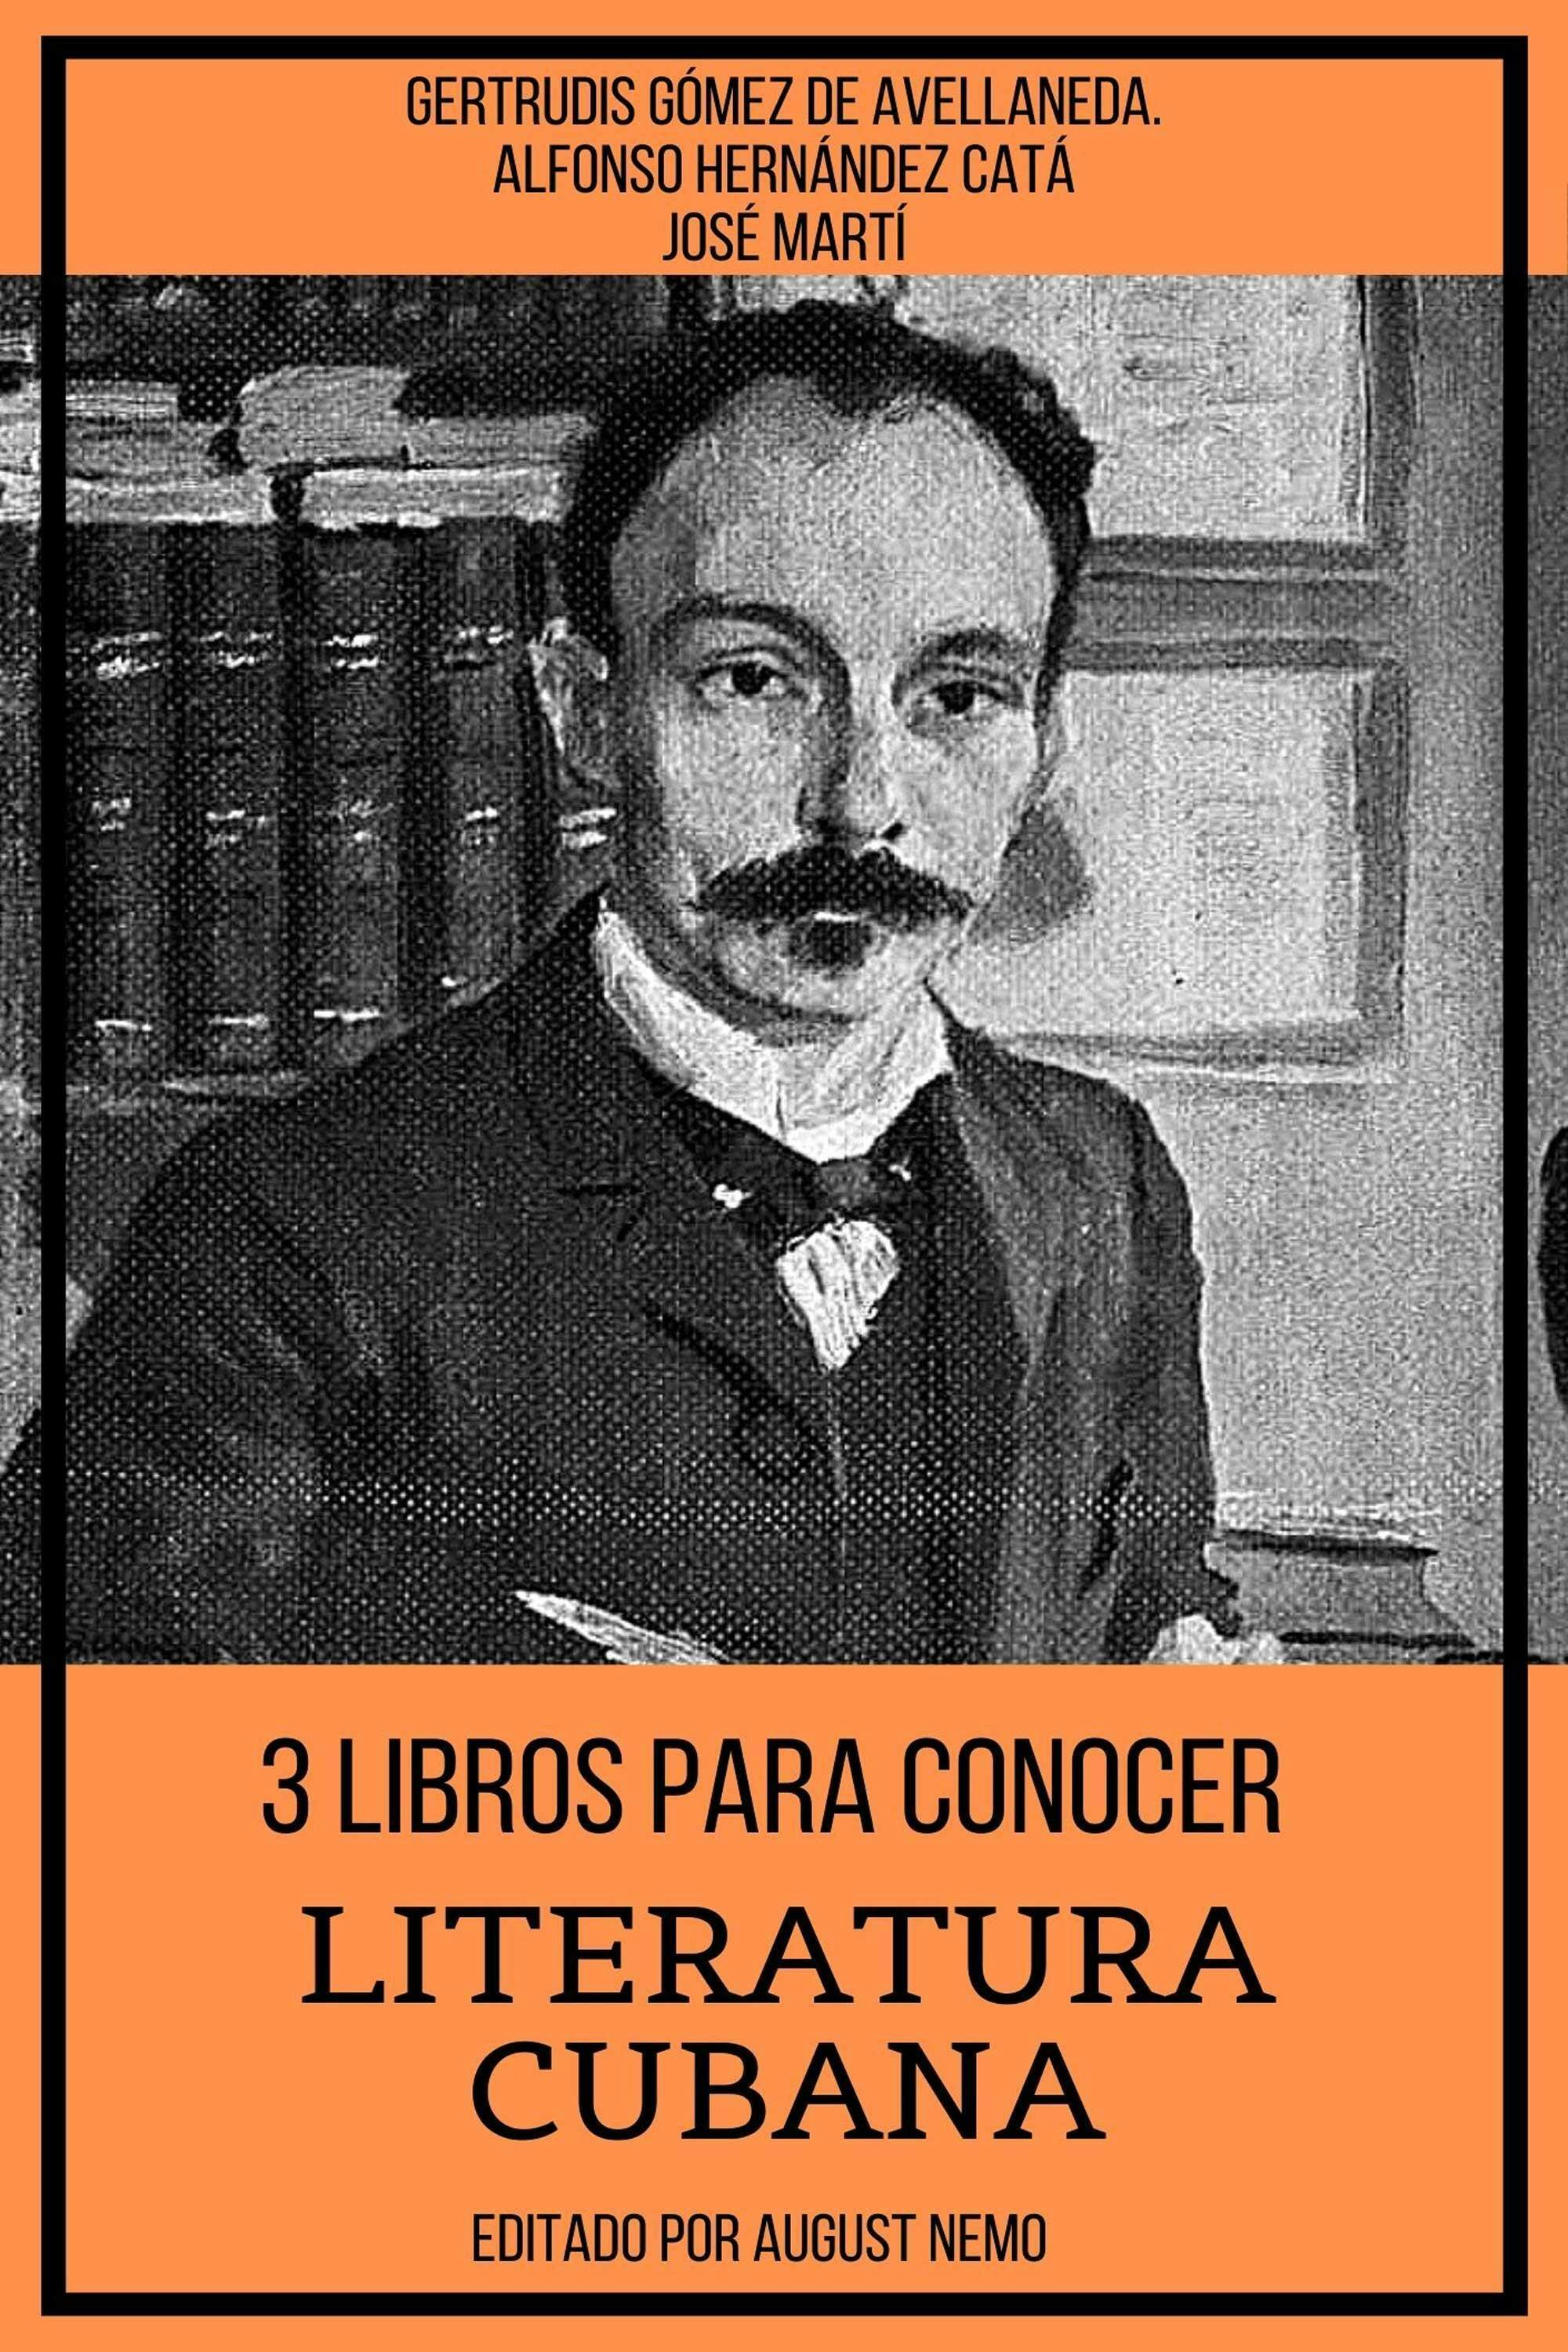 José Martí entre libros